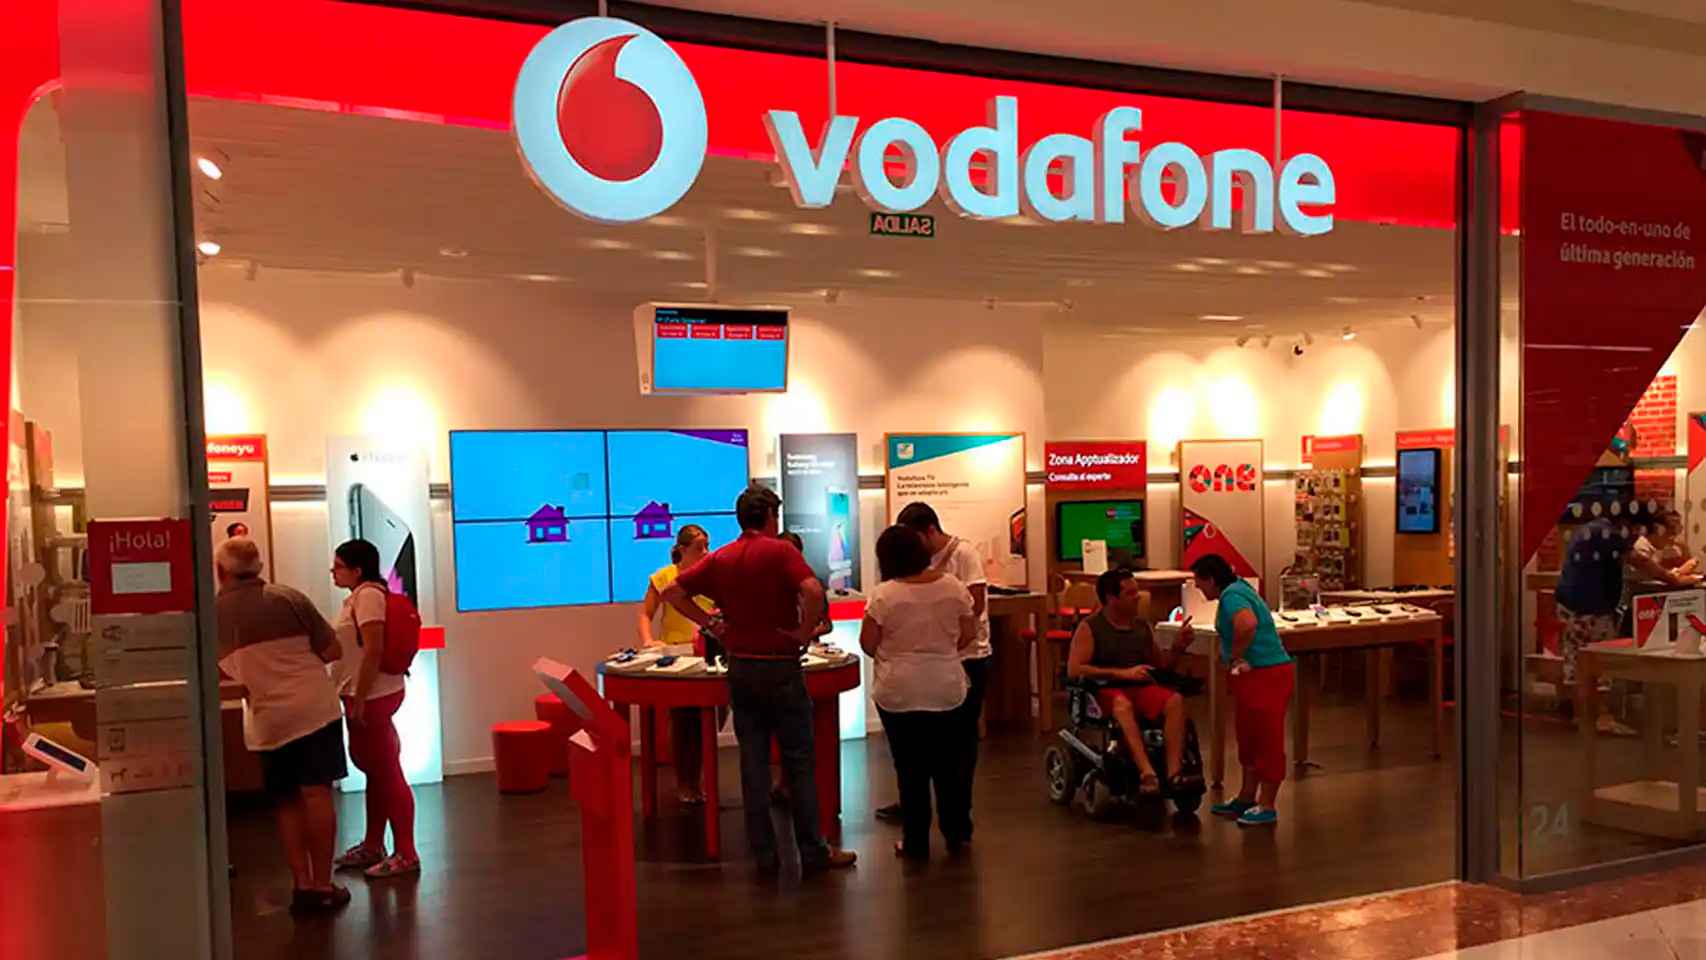 Vodafone cerrara todas sus tiendas fisicas propias en España